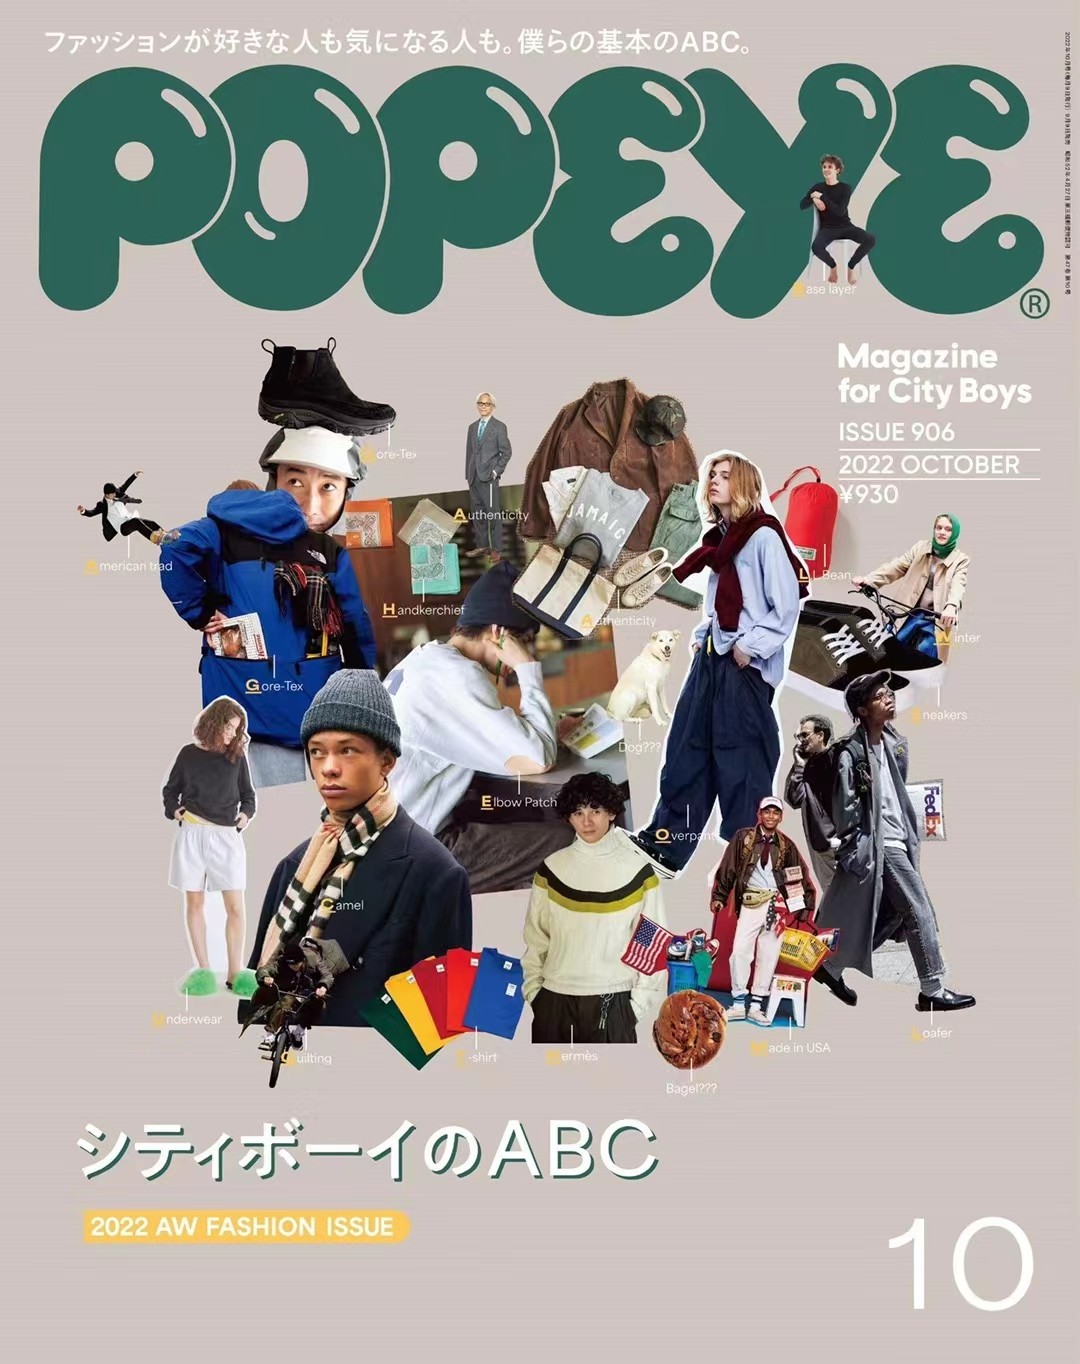 【瑜伽健身上新】 【日本】 002 Popeye 2022年10月 日本时尚男士服装搭配穿搭杂